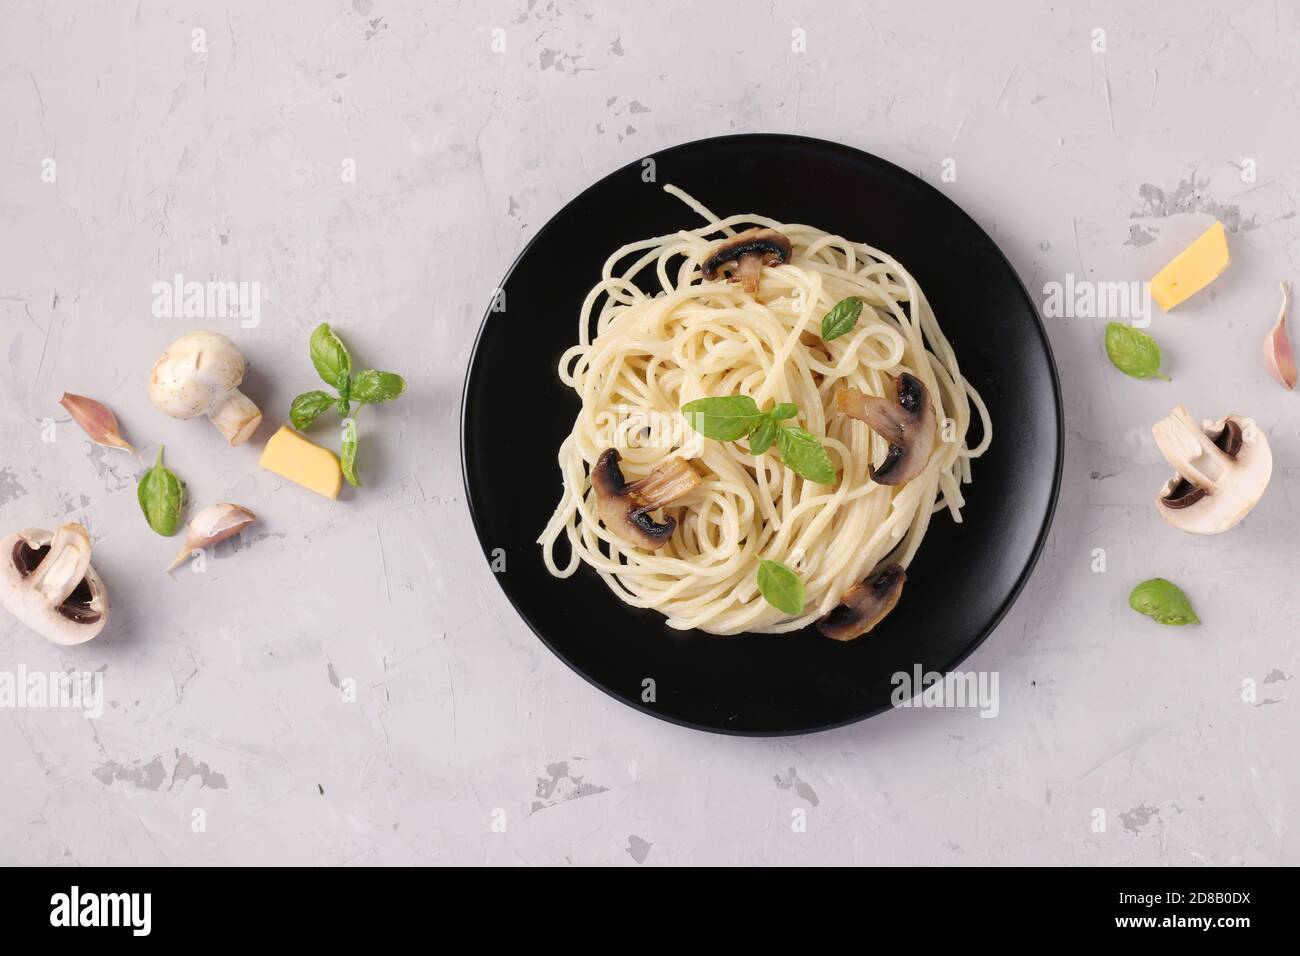 Spaghetti aux champignons et basilic sur plaque noire sur fond gris, vue de dessus, format horizontal Banque D'Images